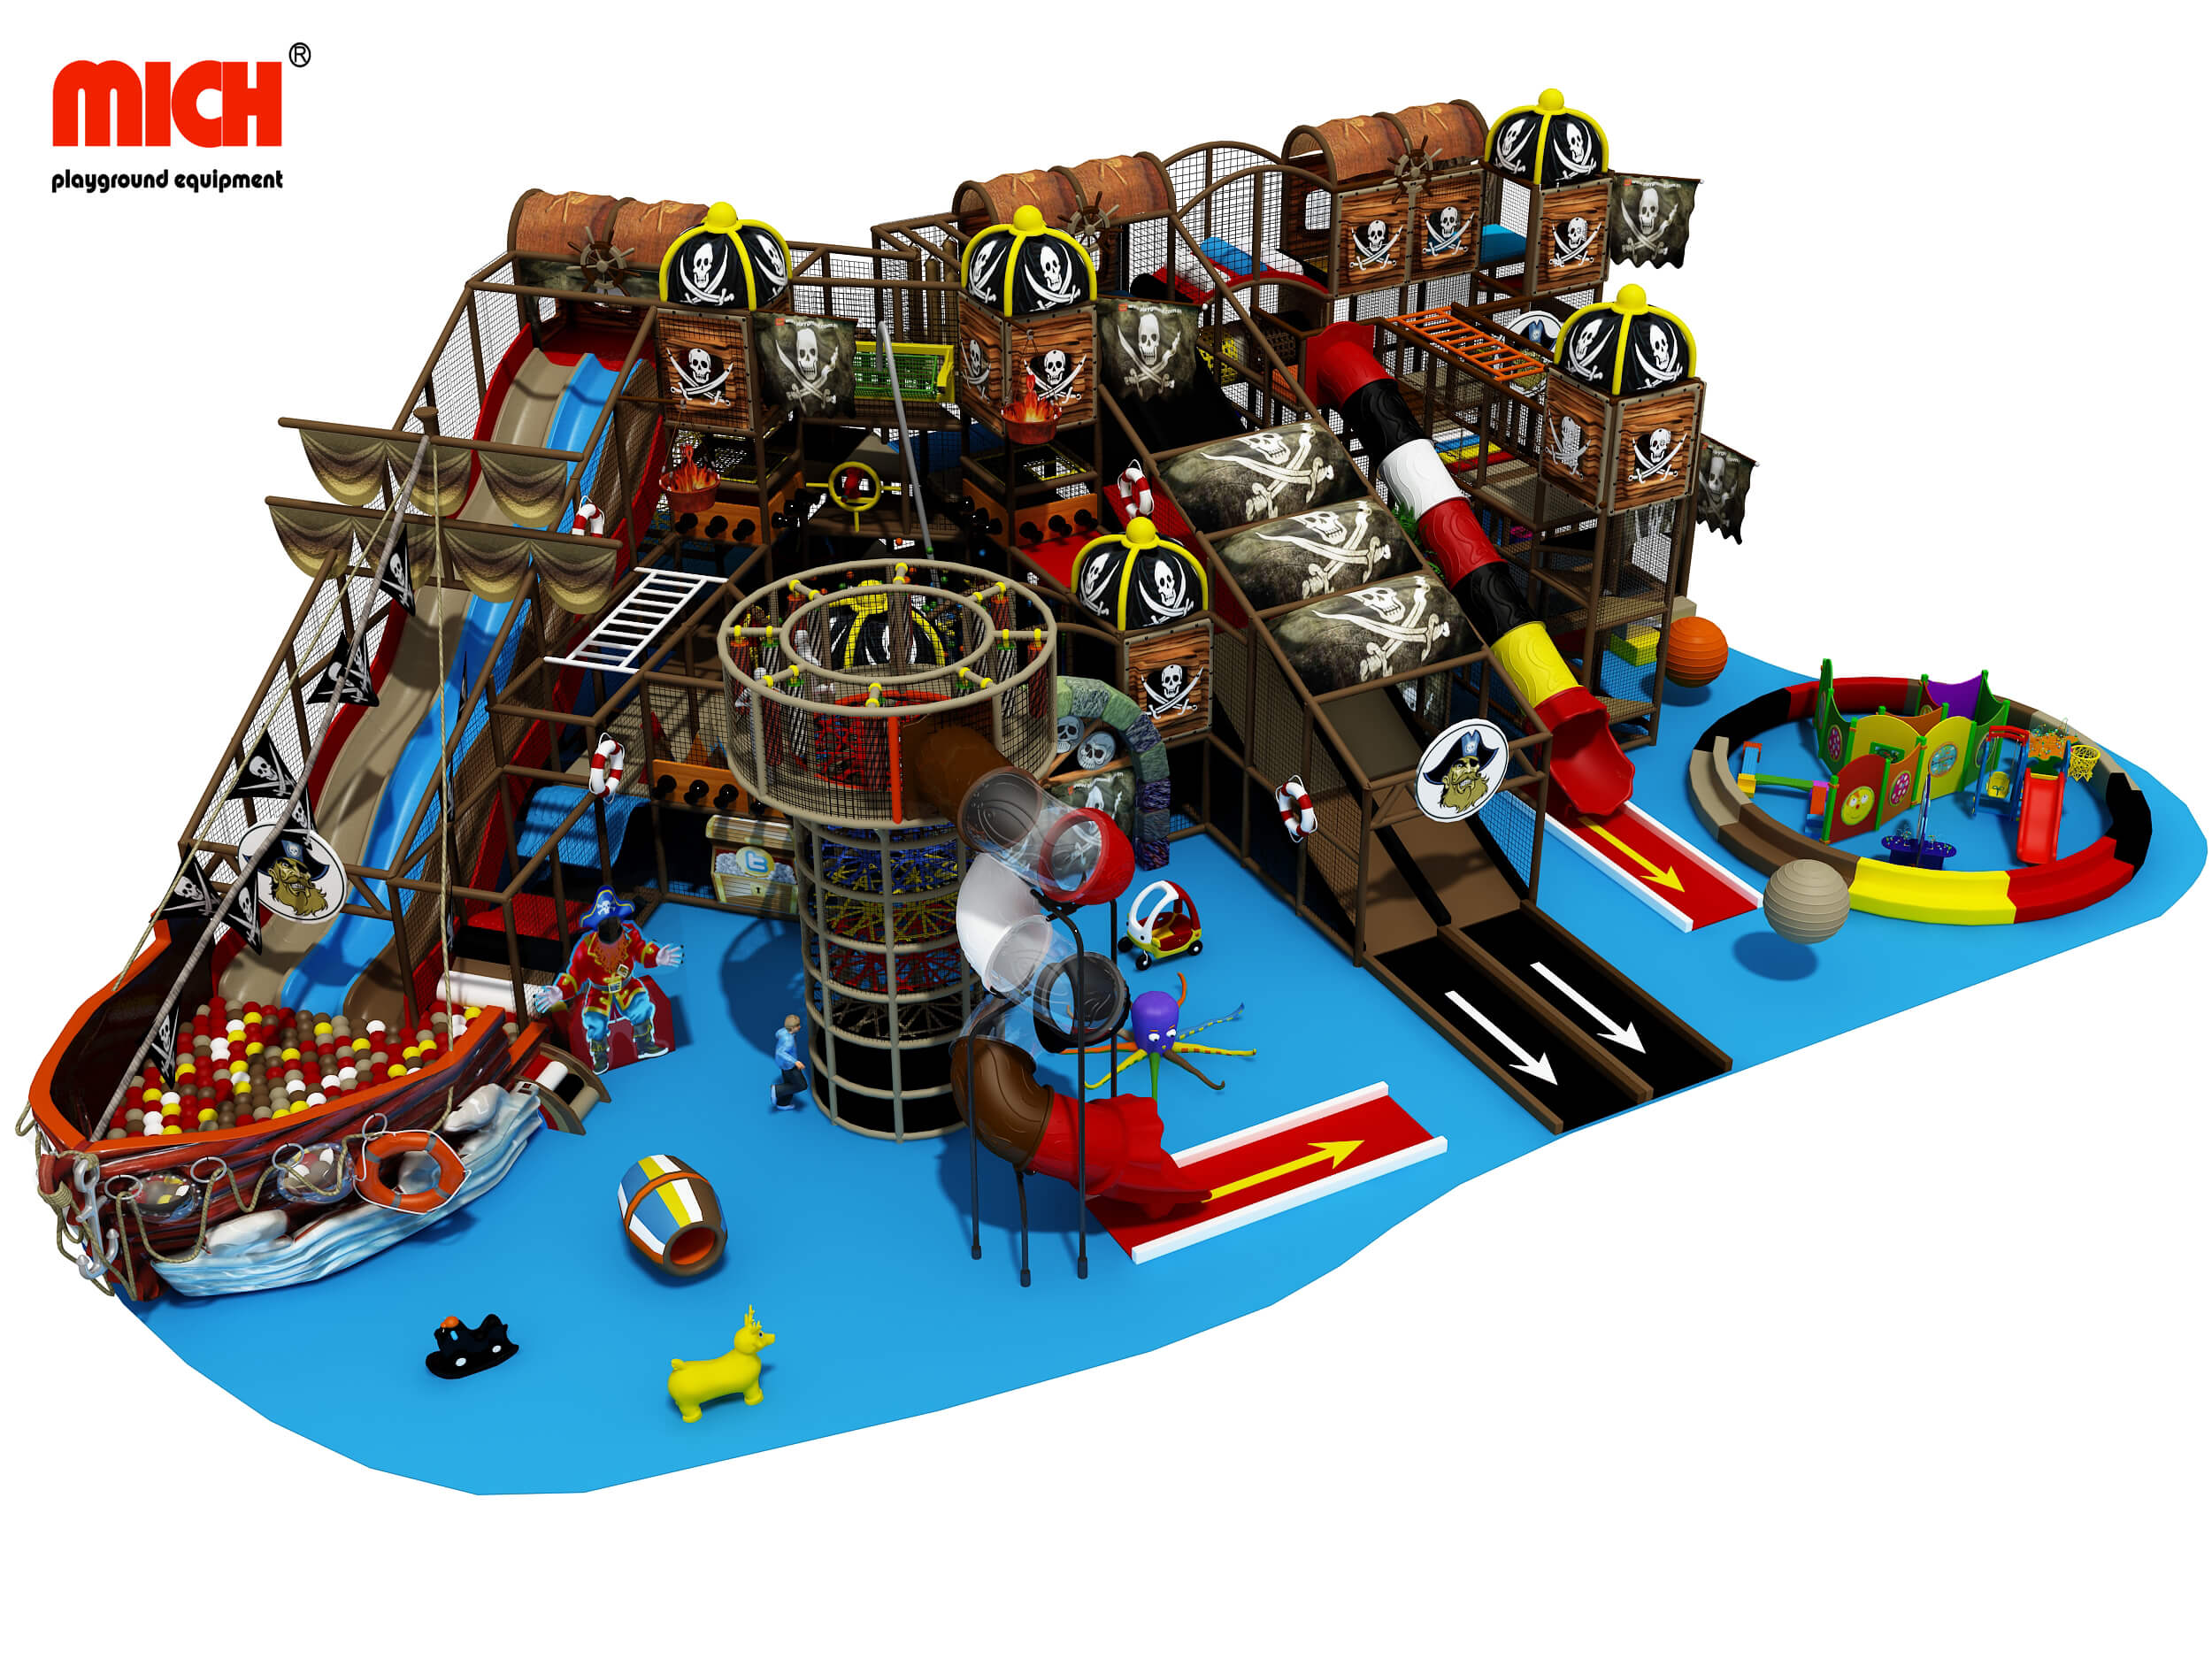 Centro de brincadeiras com temas piratas com temas de pirata